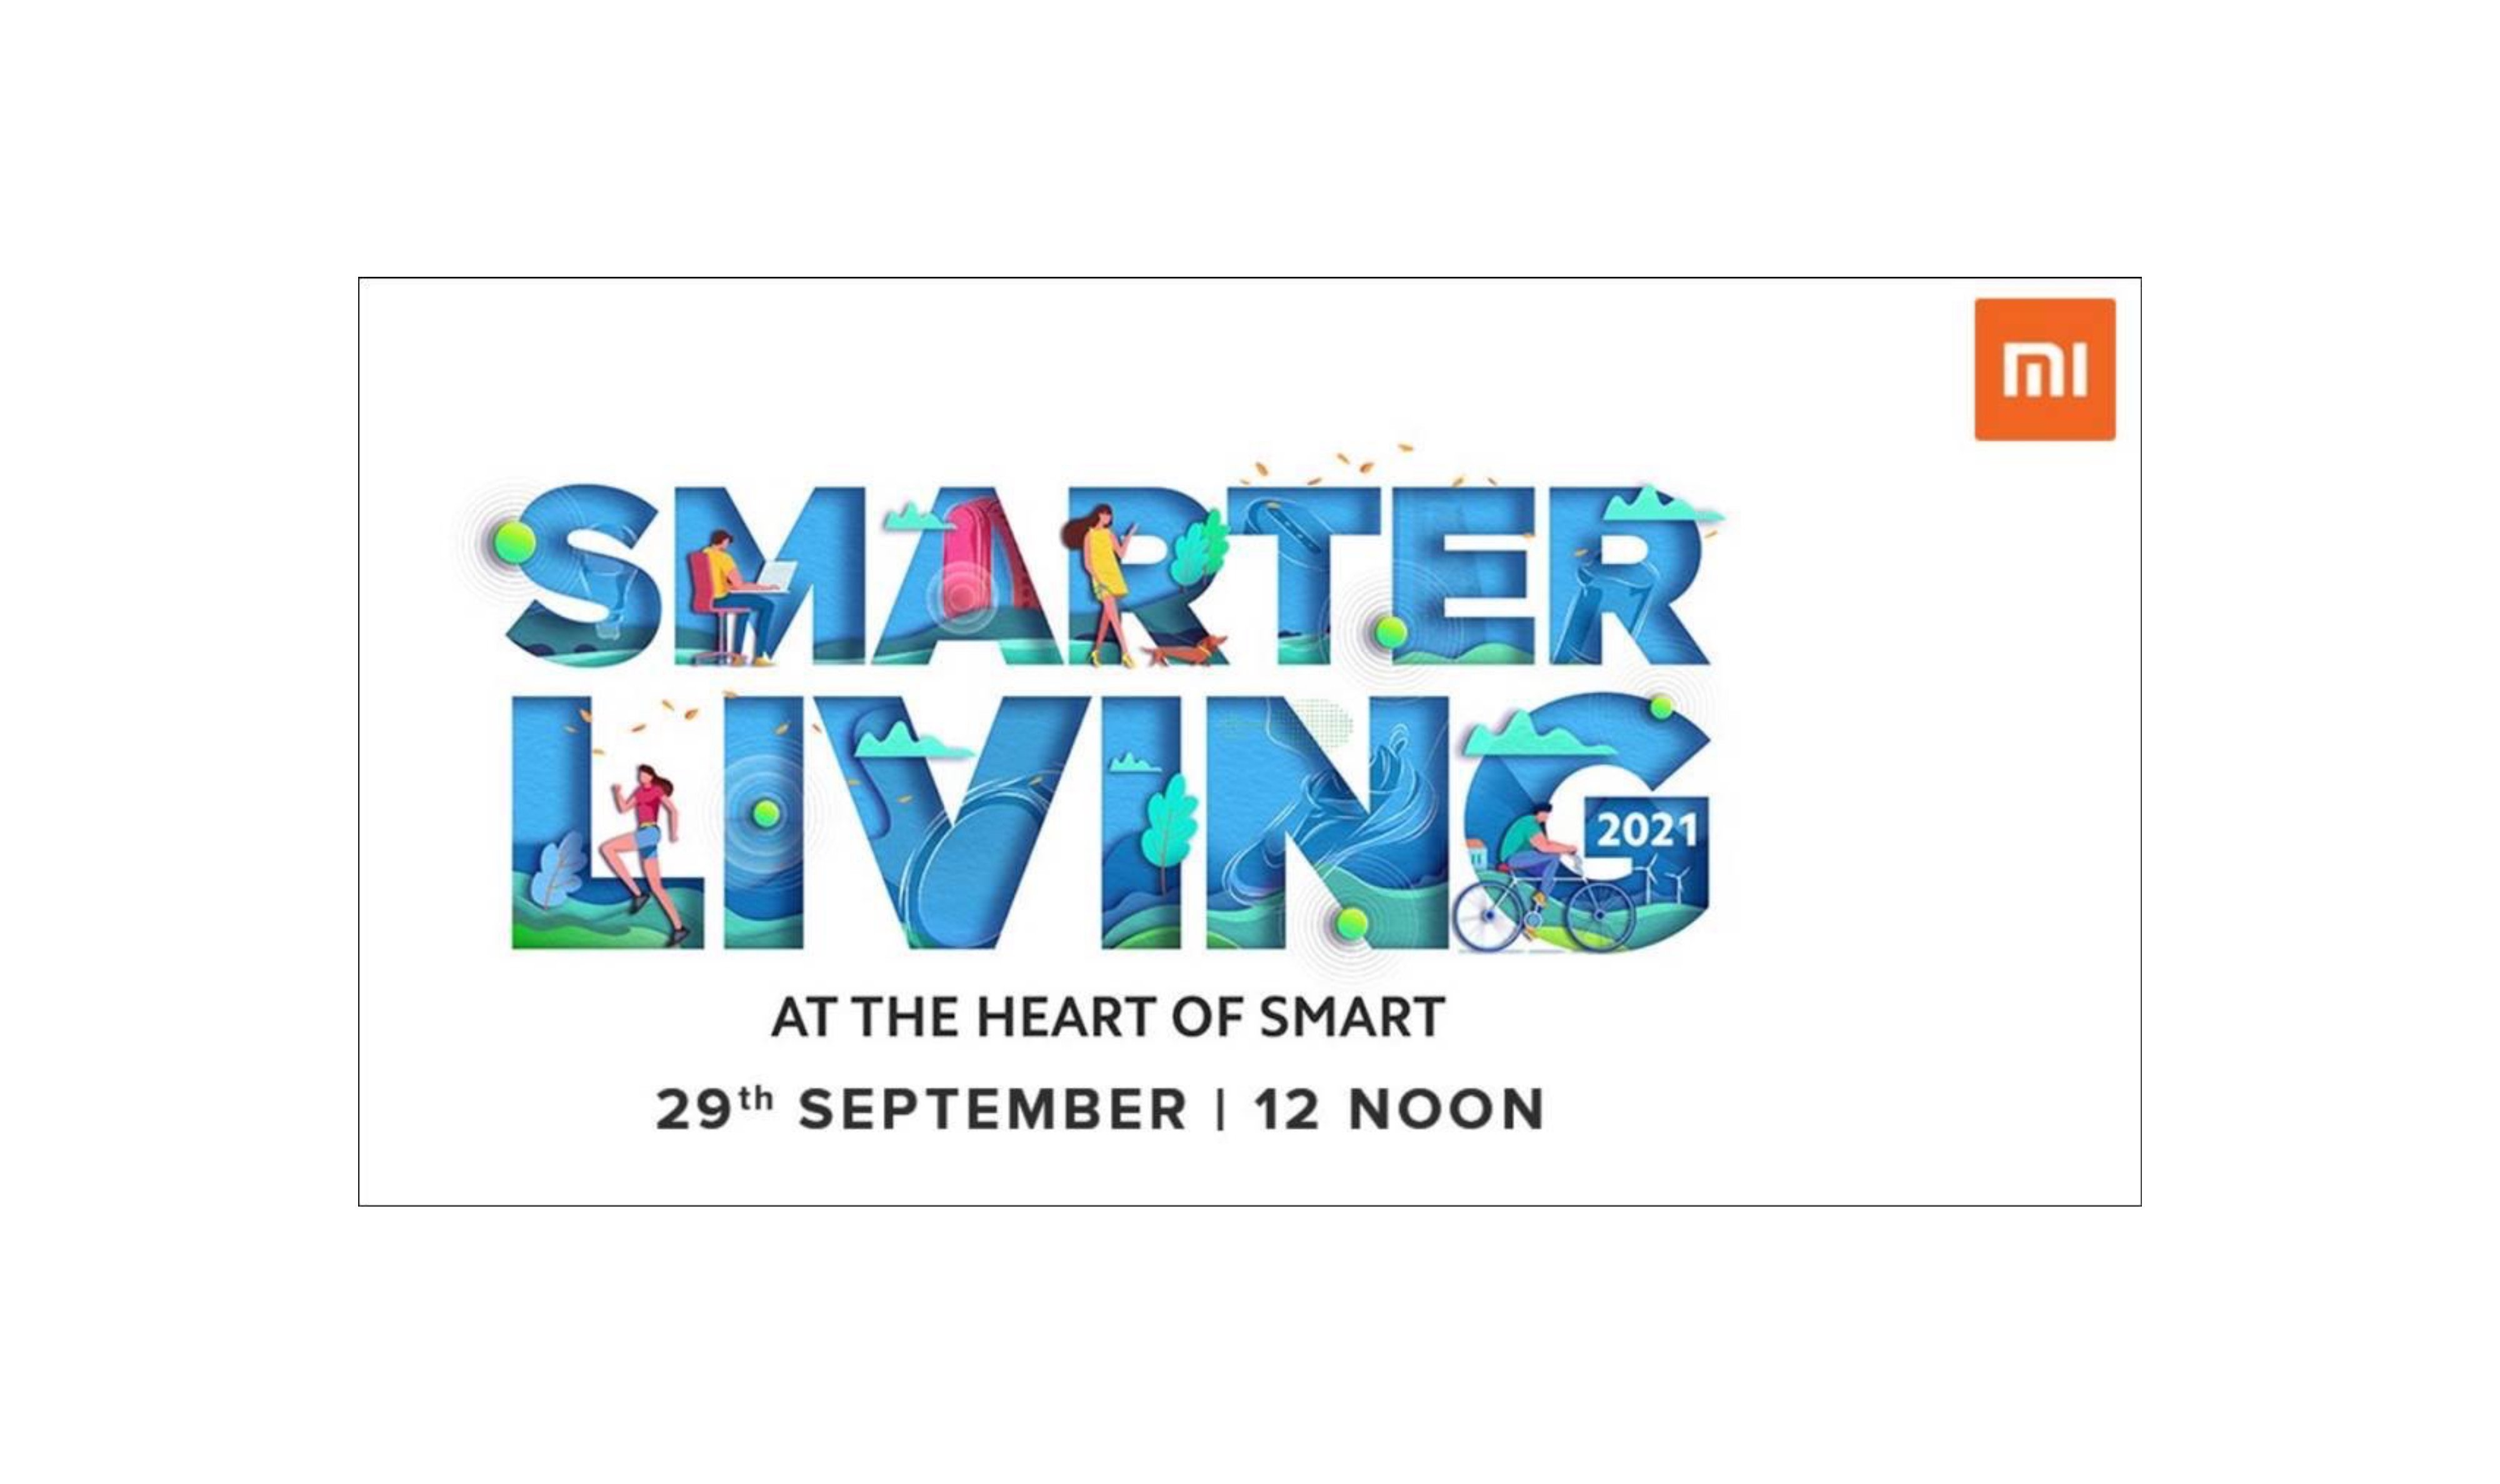   Evento Xiaomi Smarter Living 2020 India 29 de septiembre 